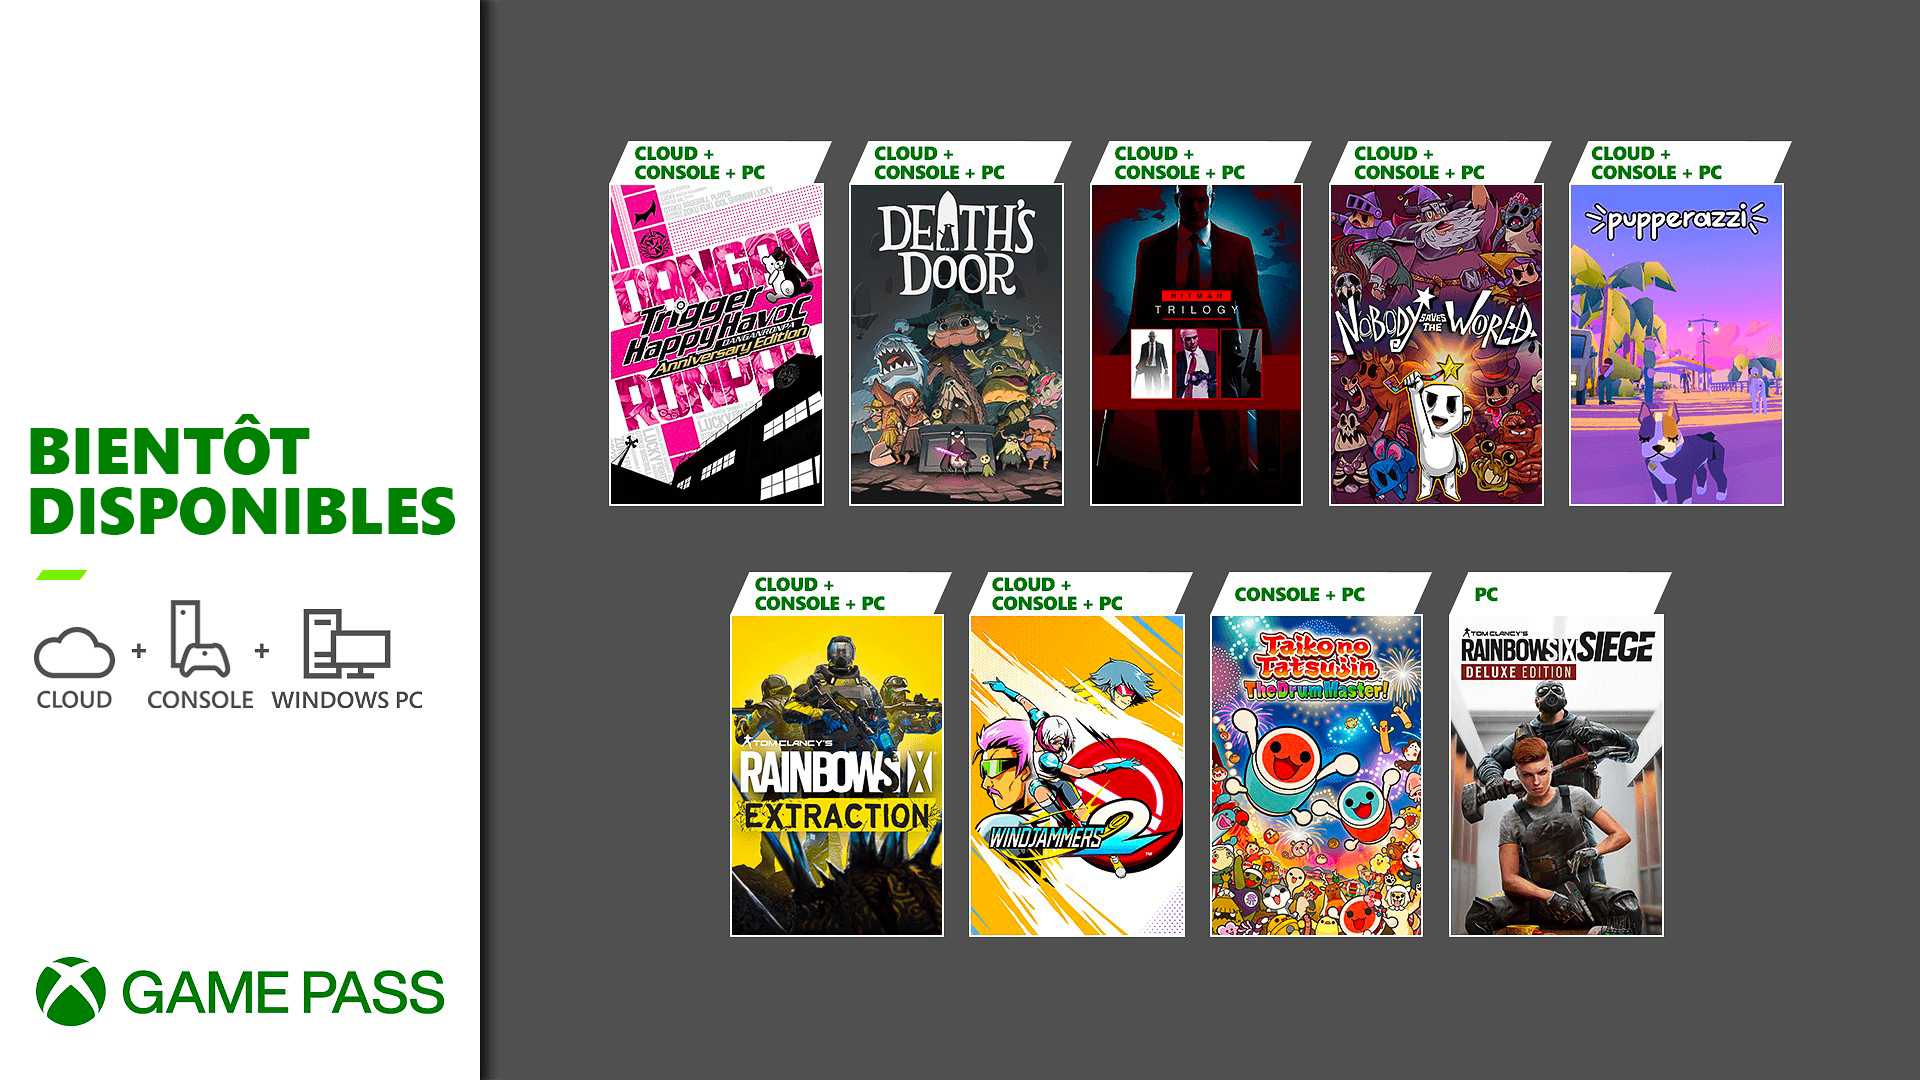 Prochainement dans le Xbox Game Pass : Rainbow Six Extraction, la trilogie Hitman, Death’s Door et plus encore